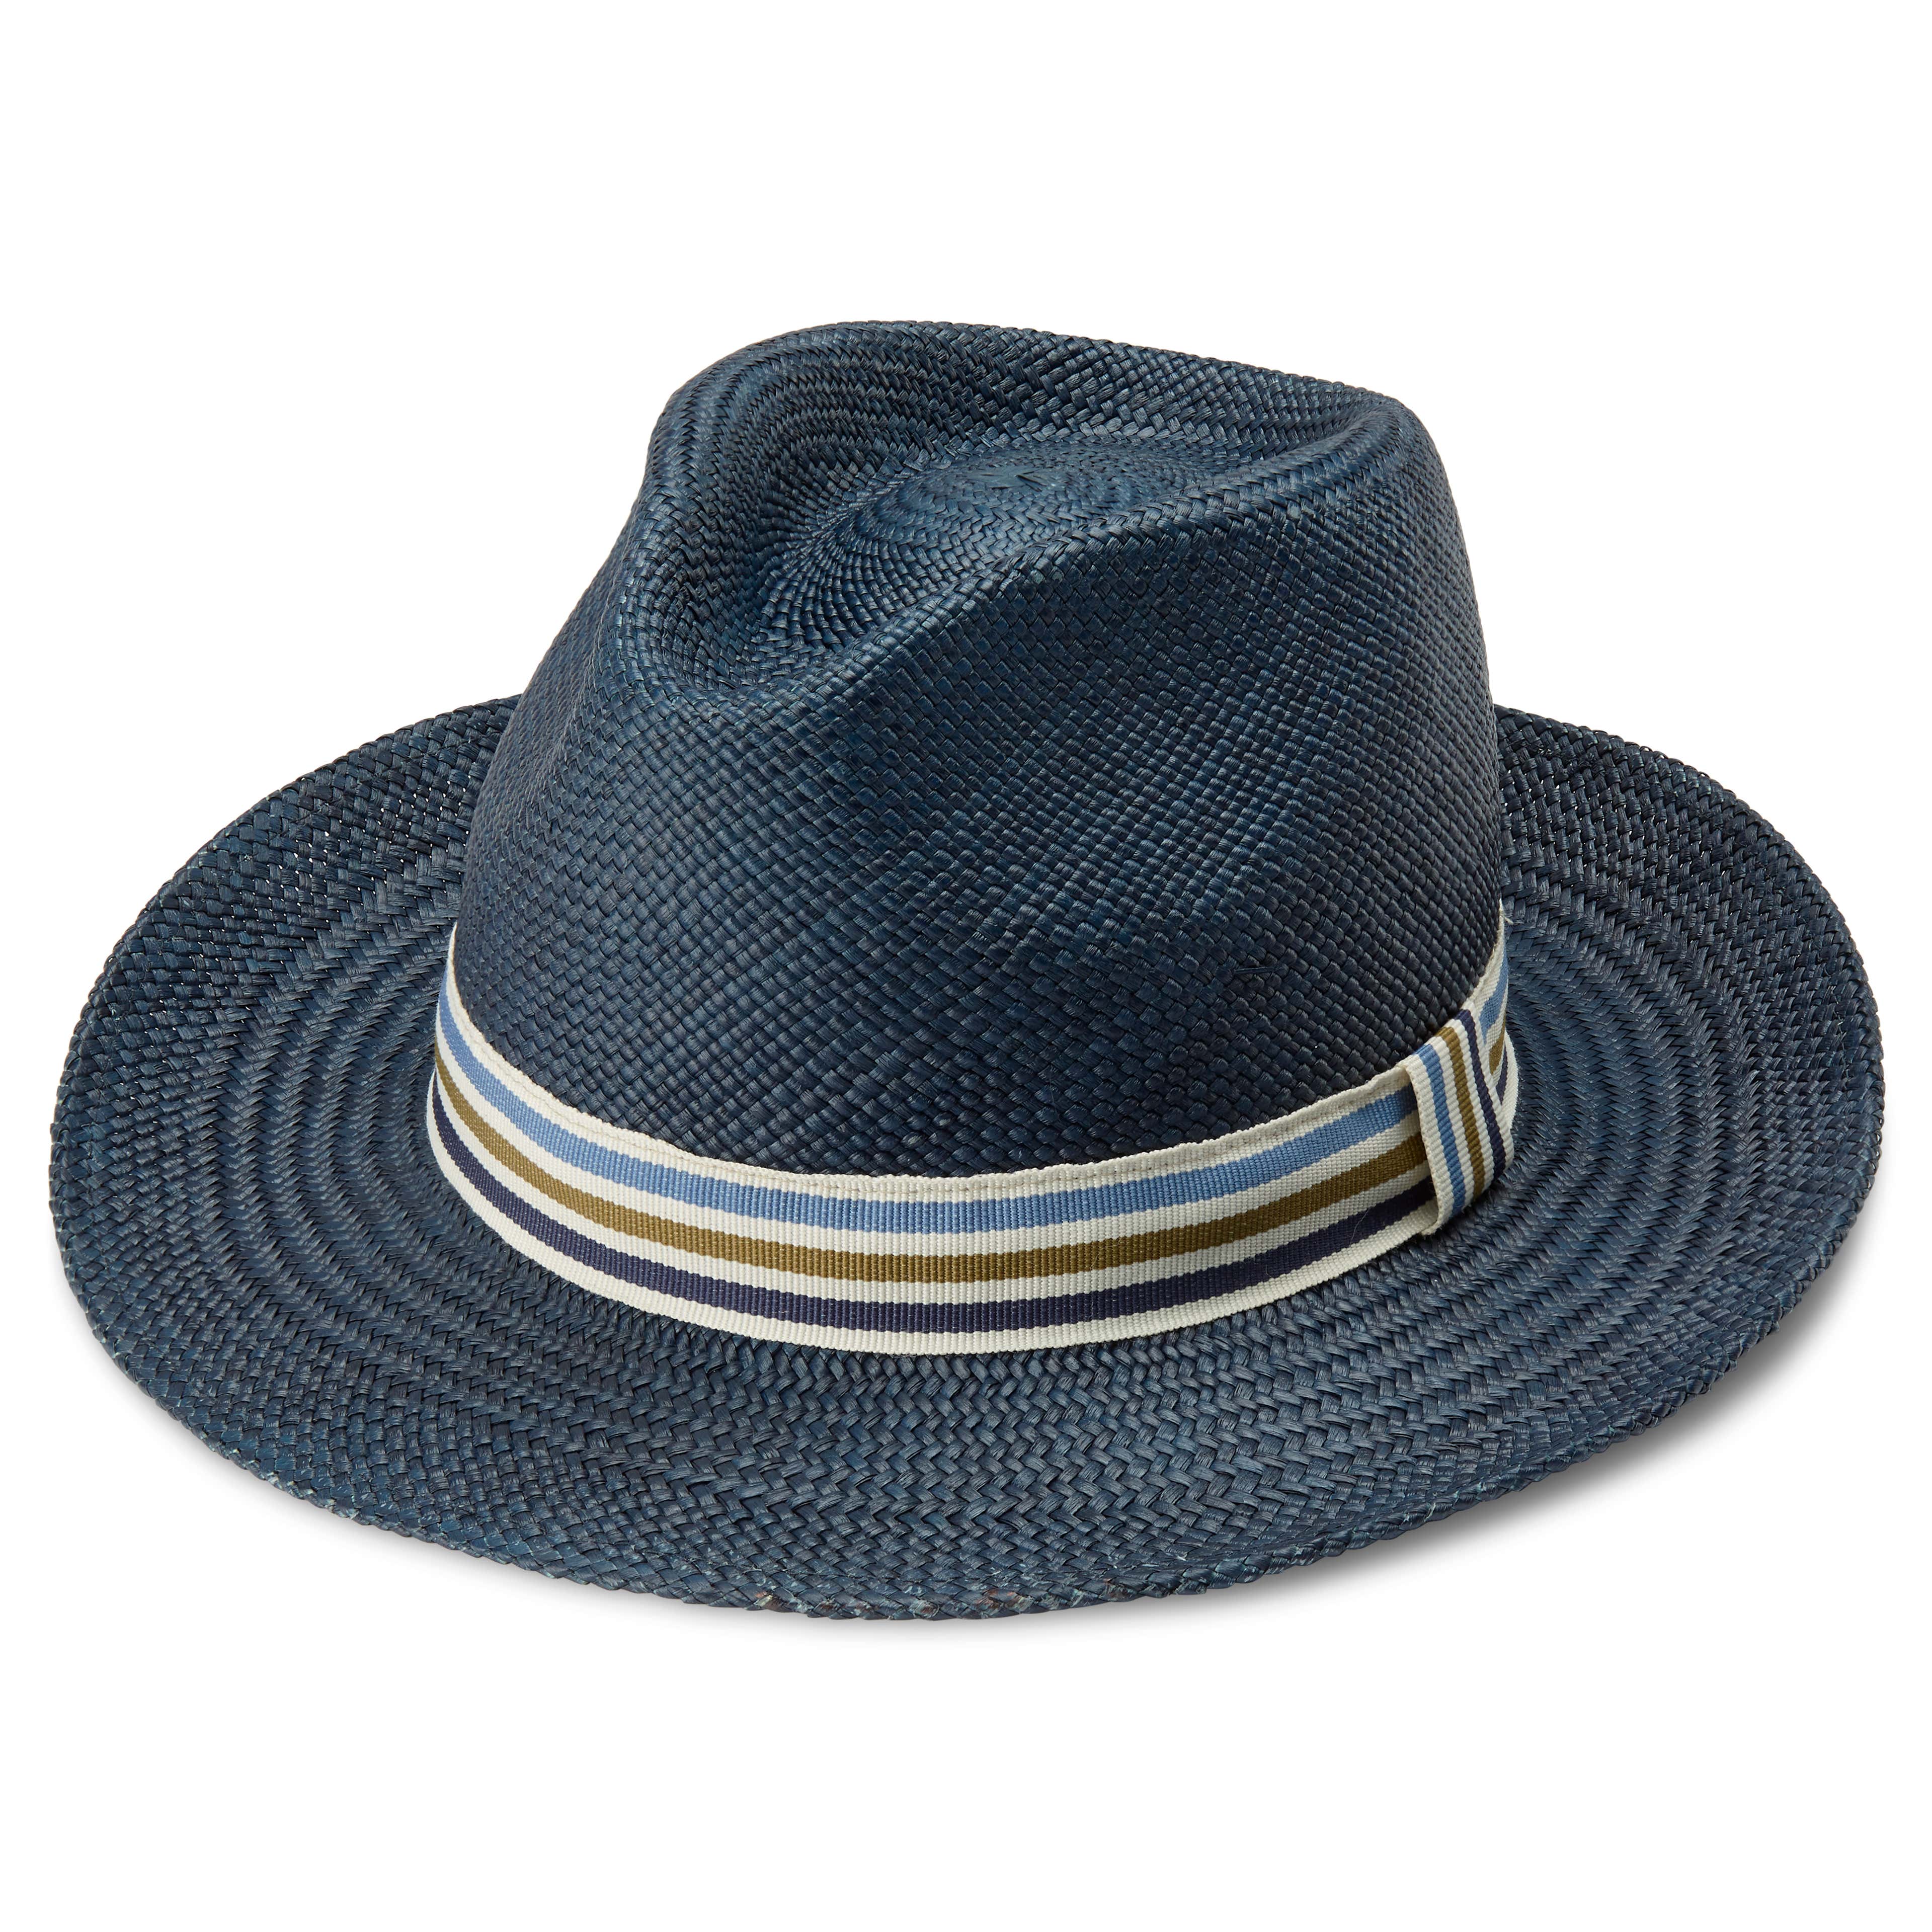 Pino Blue Moda Panama Hat with Striped Band